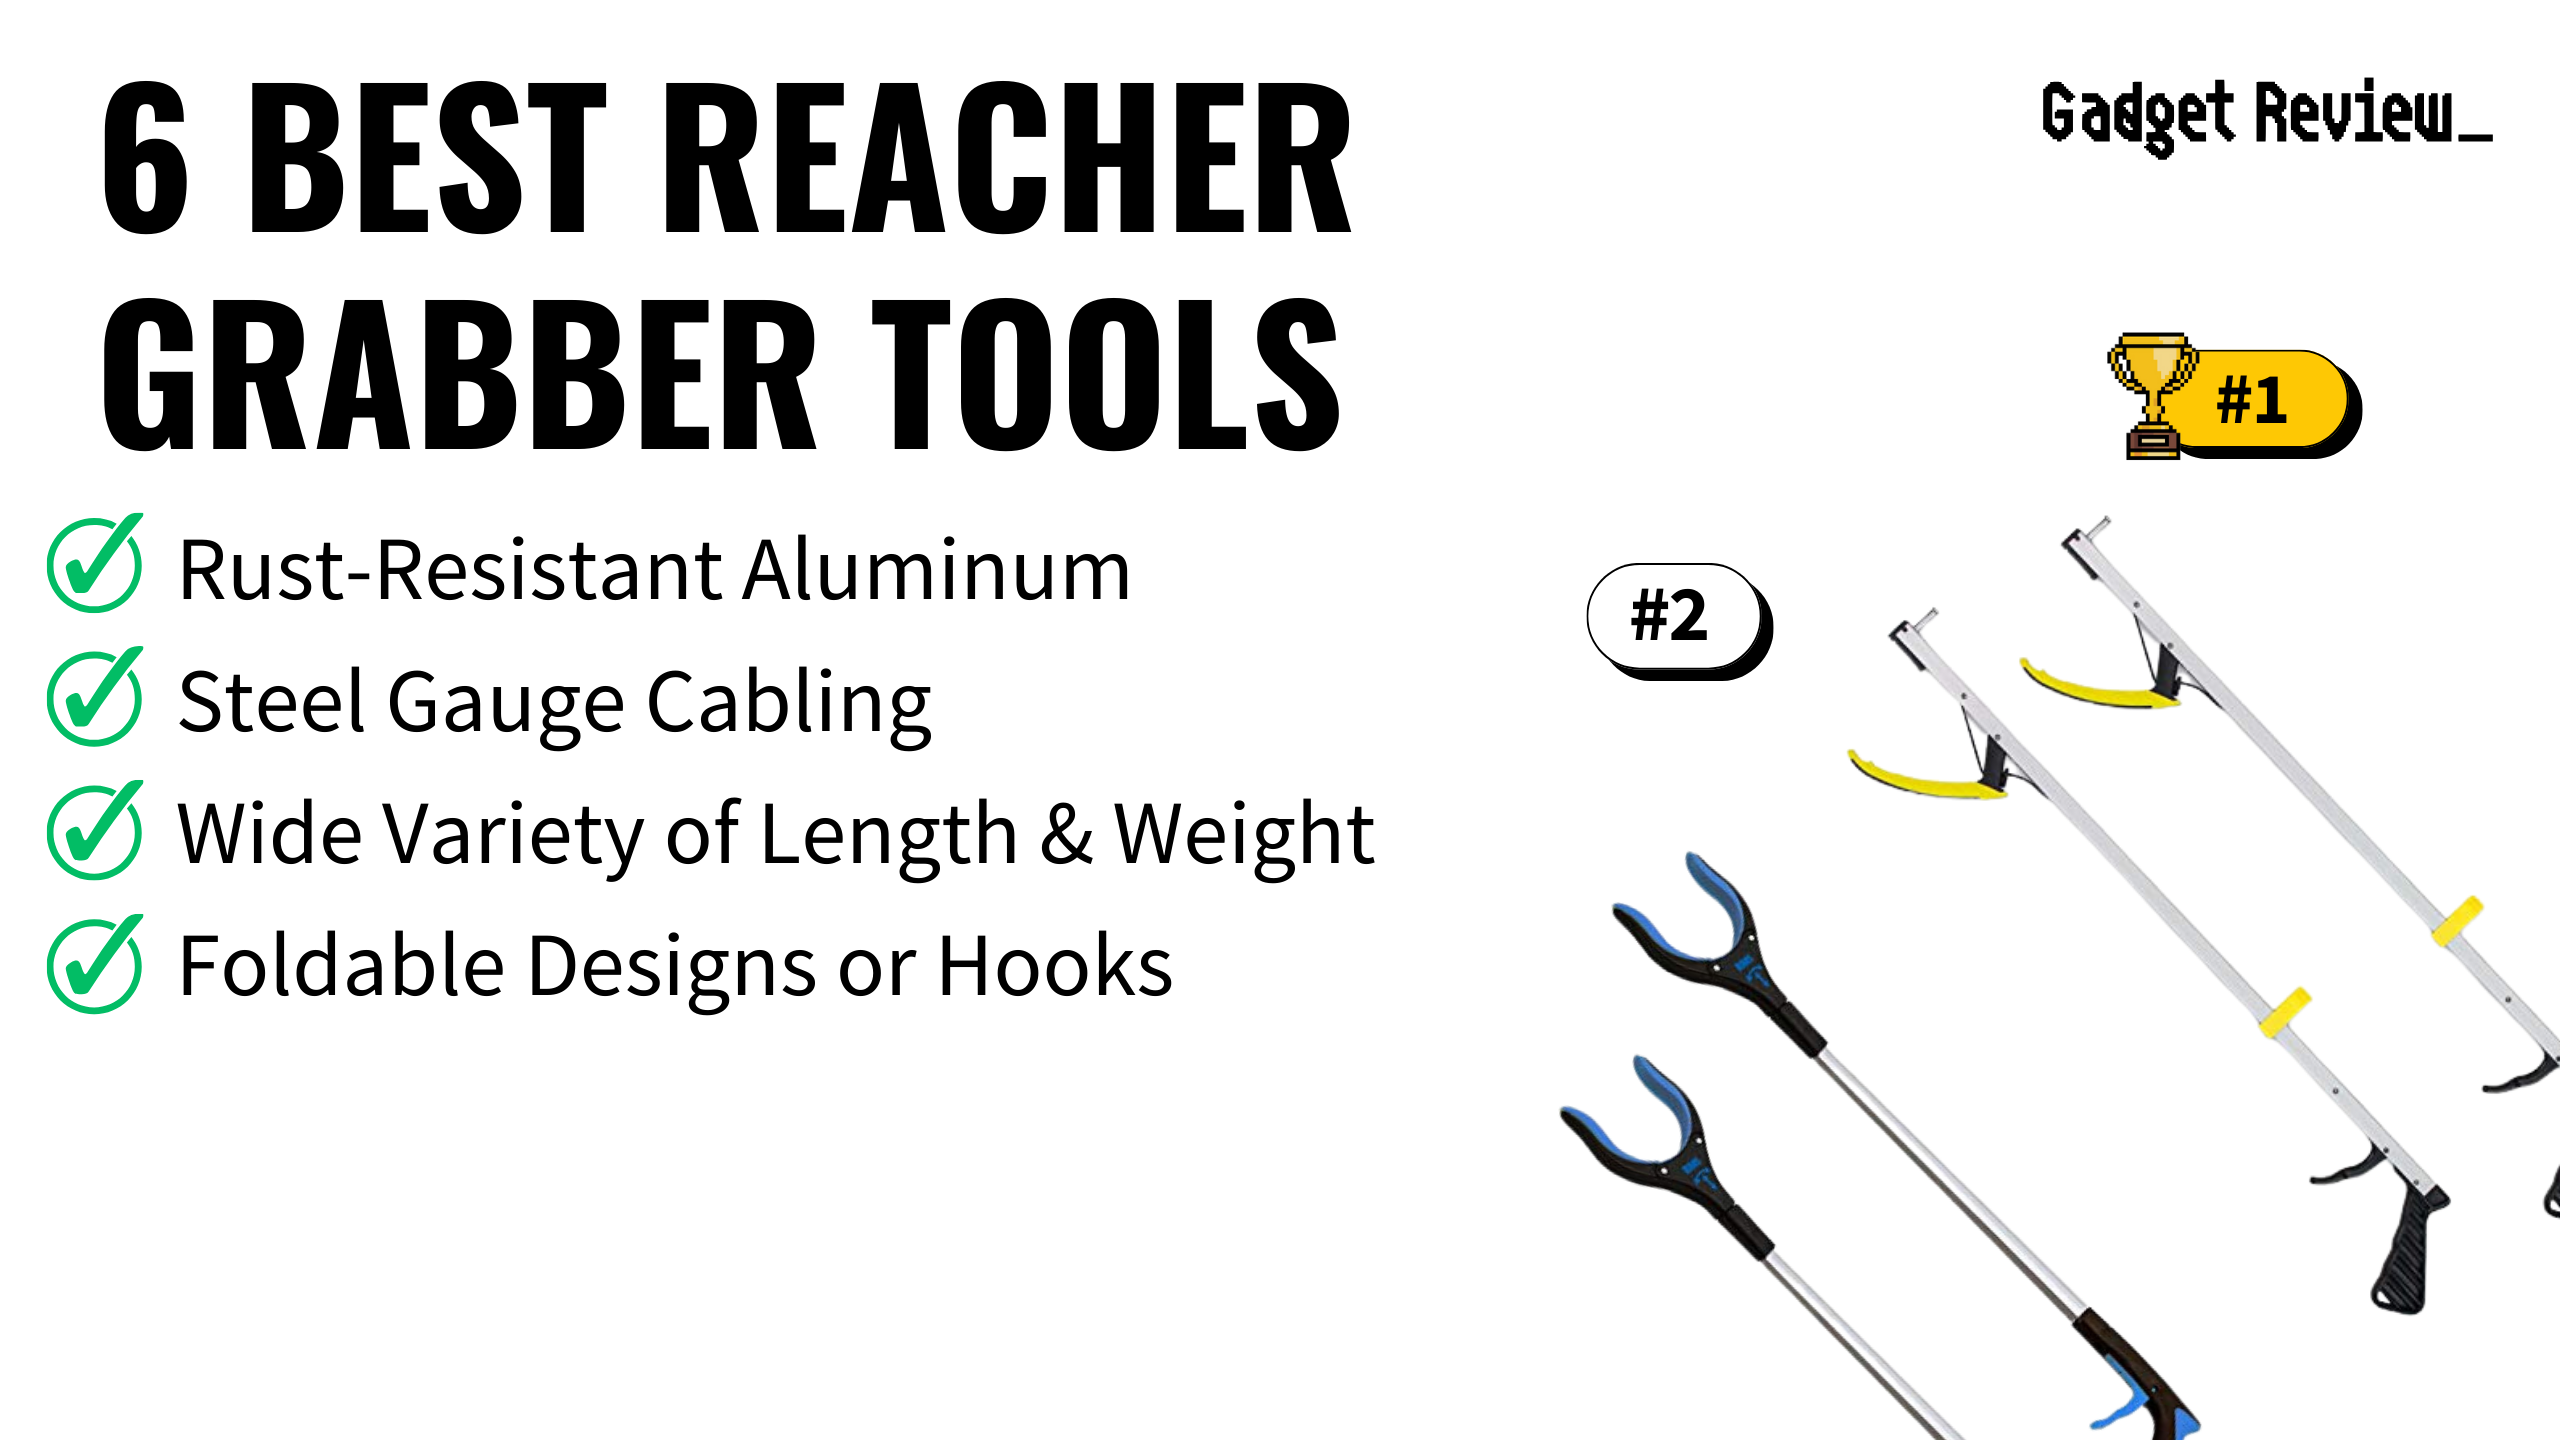 6 Best Reacher Grabber Tools